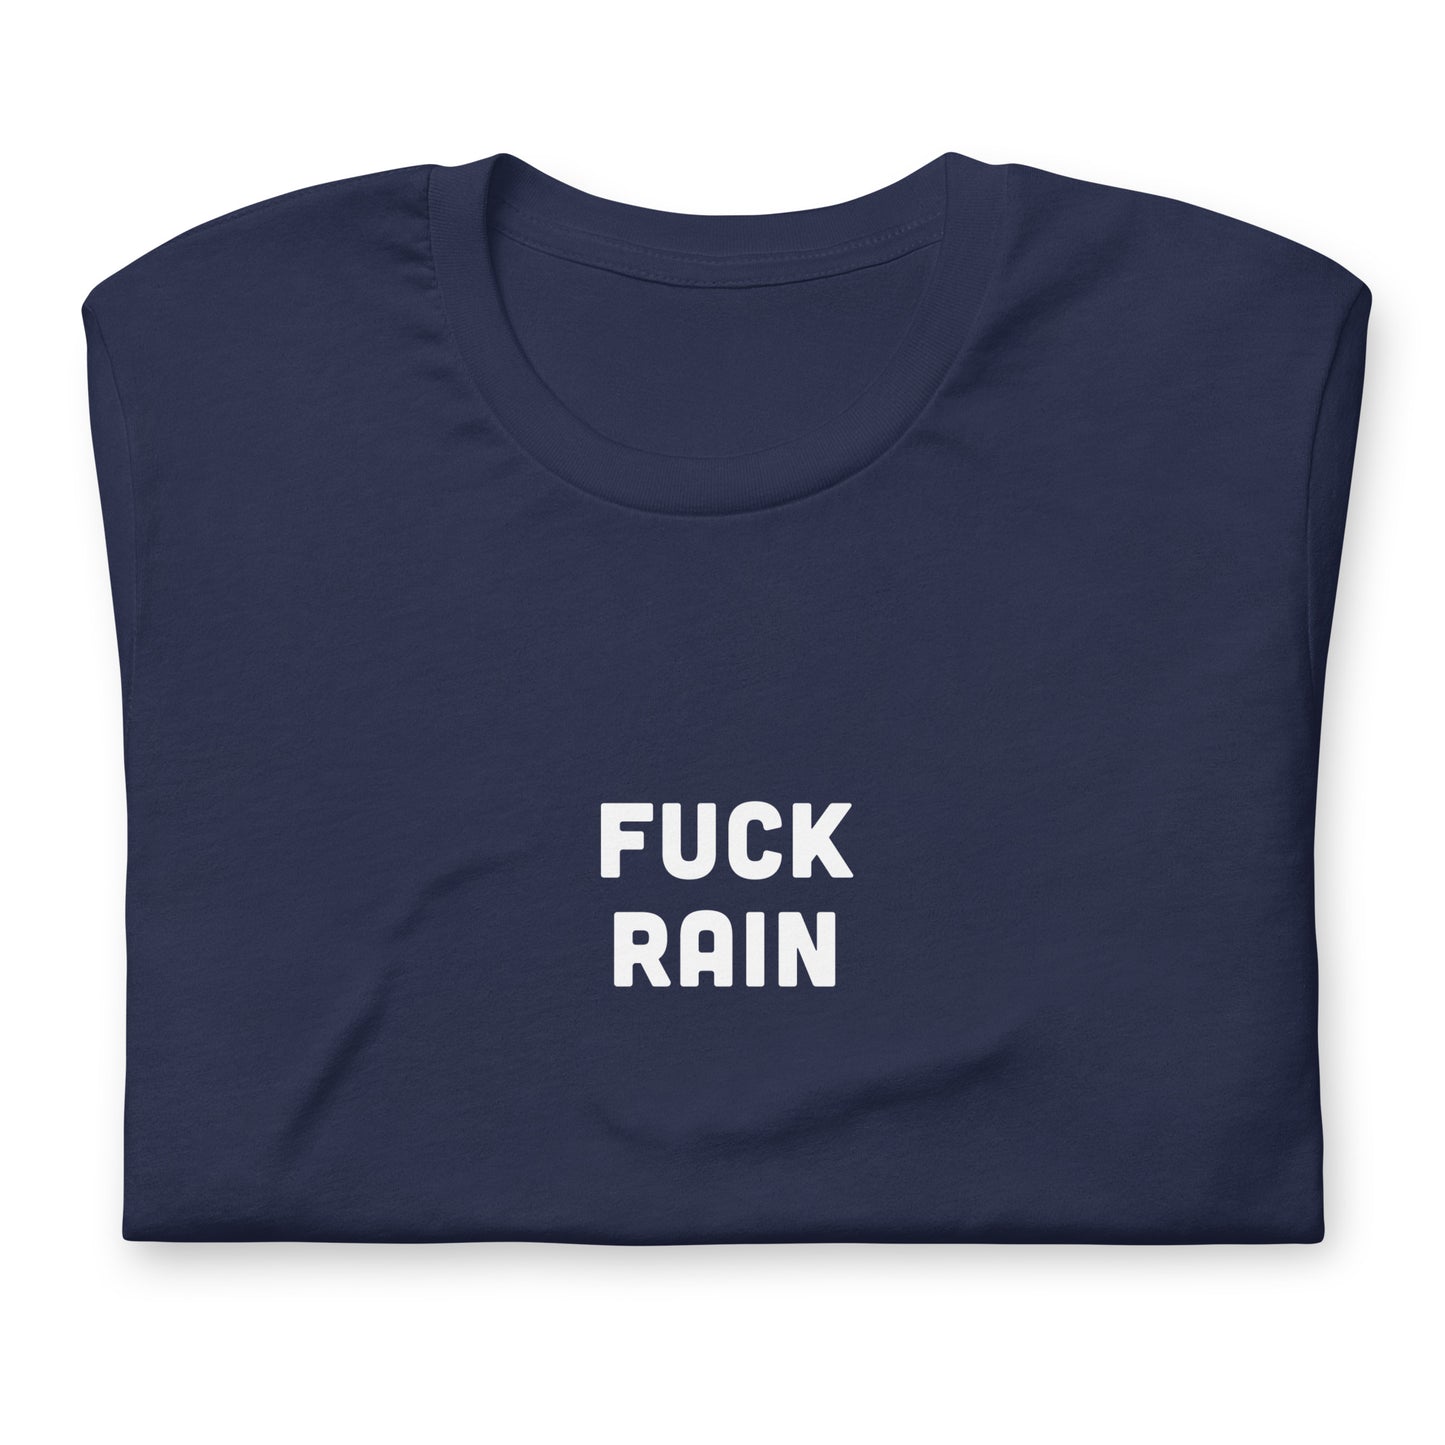 Fuck Rain T-Shirt Size L Color Black